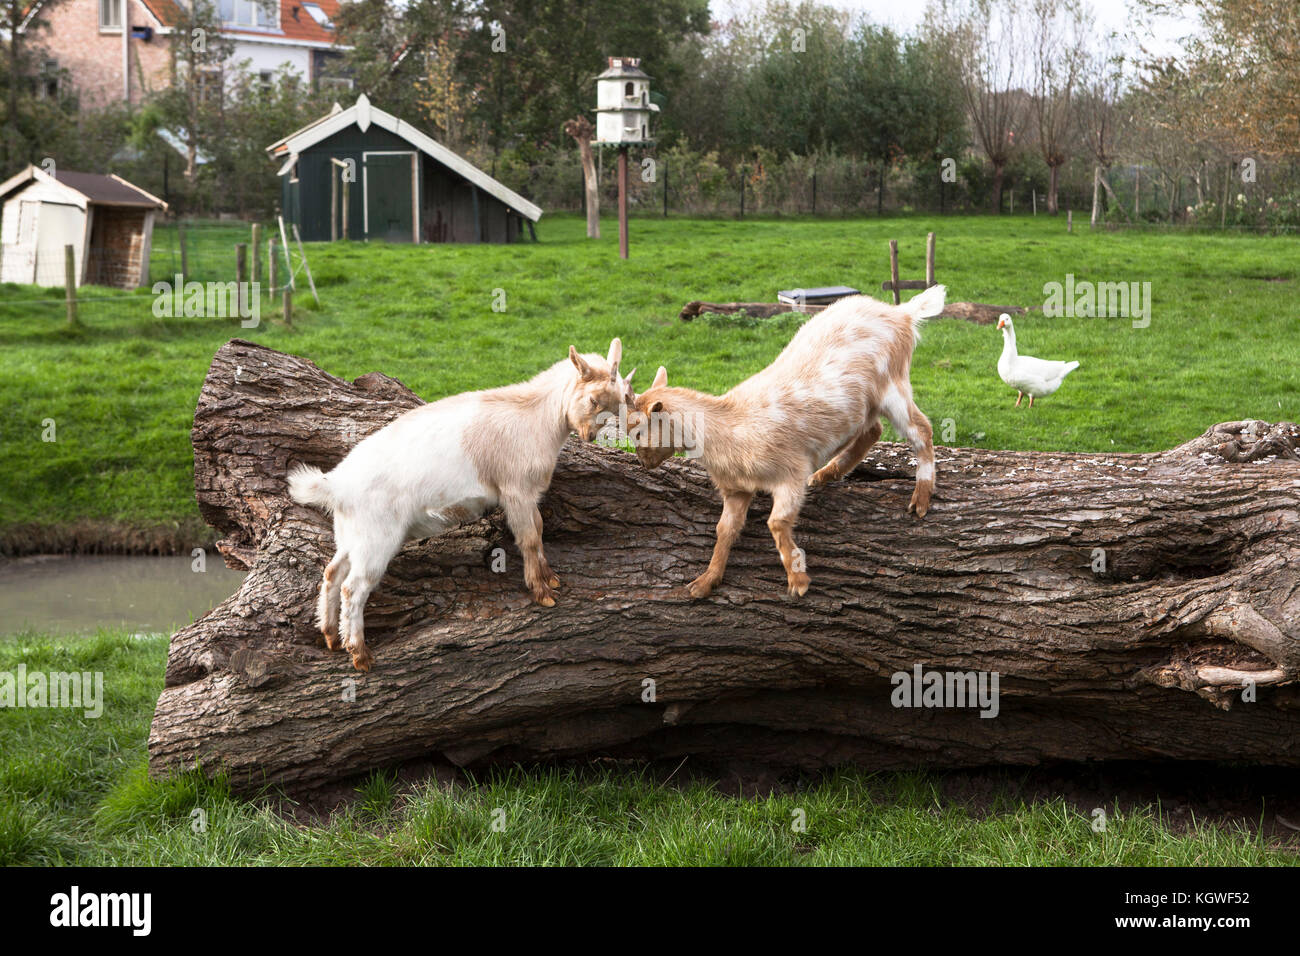 Netherlands, Zeeland, goats and poultry on a farm.  Niederlande, Zeeland, Ziegen und Gefluegel auf einem Bauernhof. Stock Photo